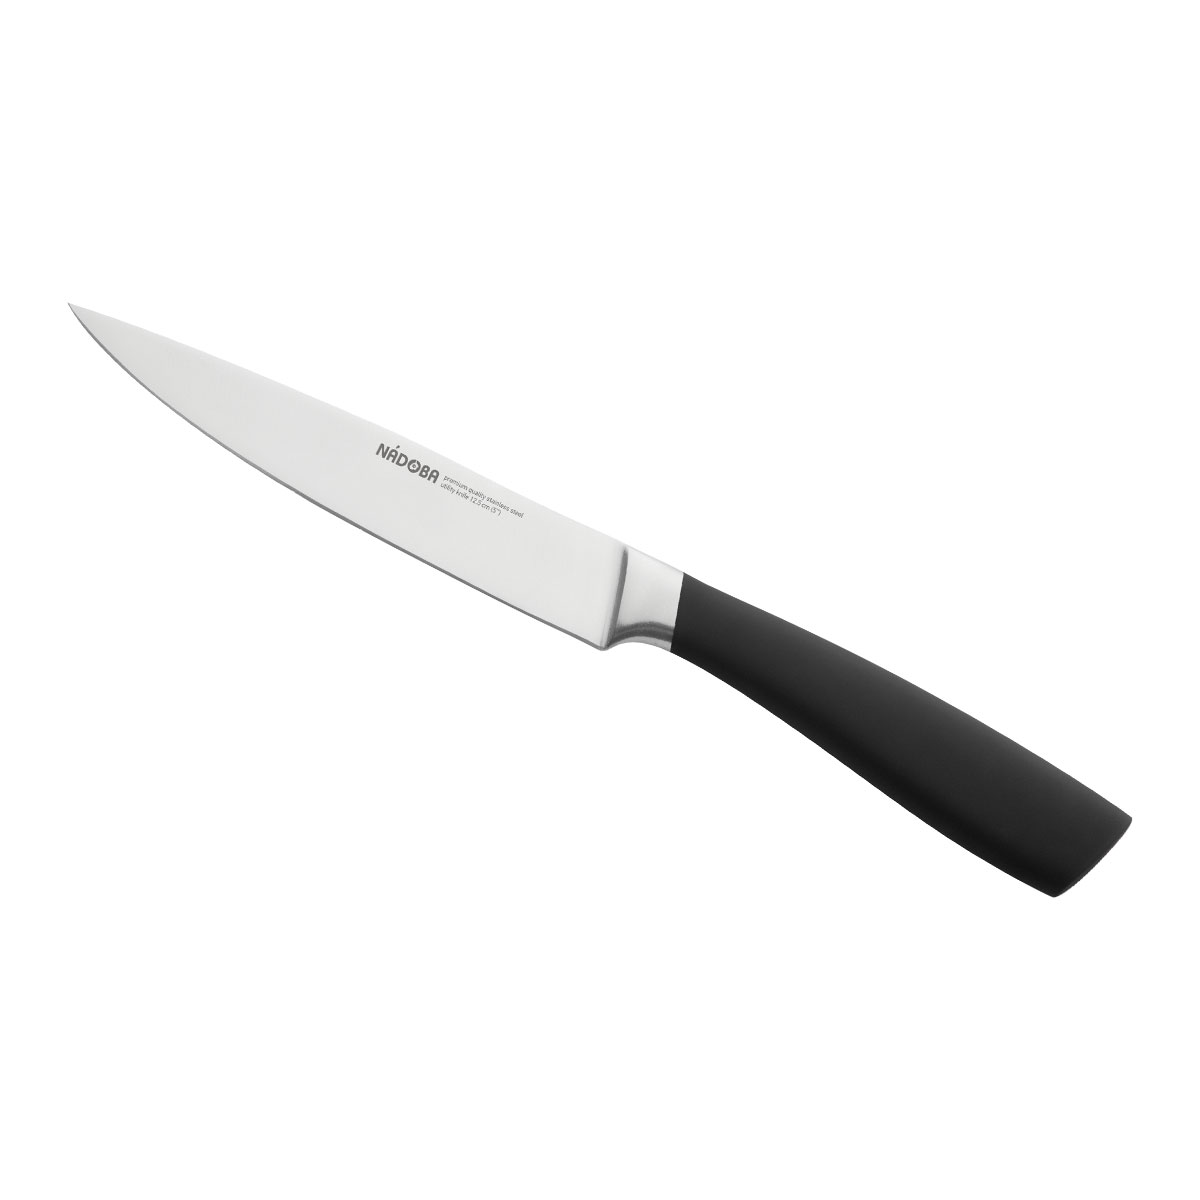 Нож Nadoba универсальный 723917, 12,5 см нож универсальный 13 см nadoba helga